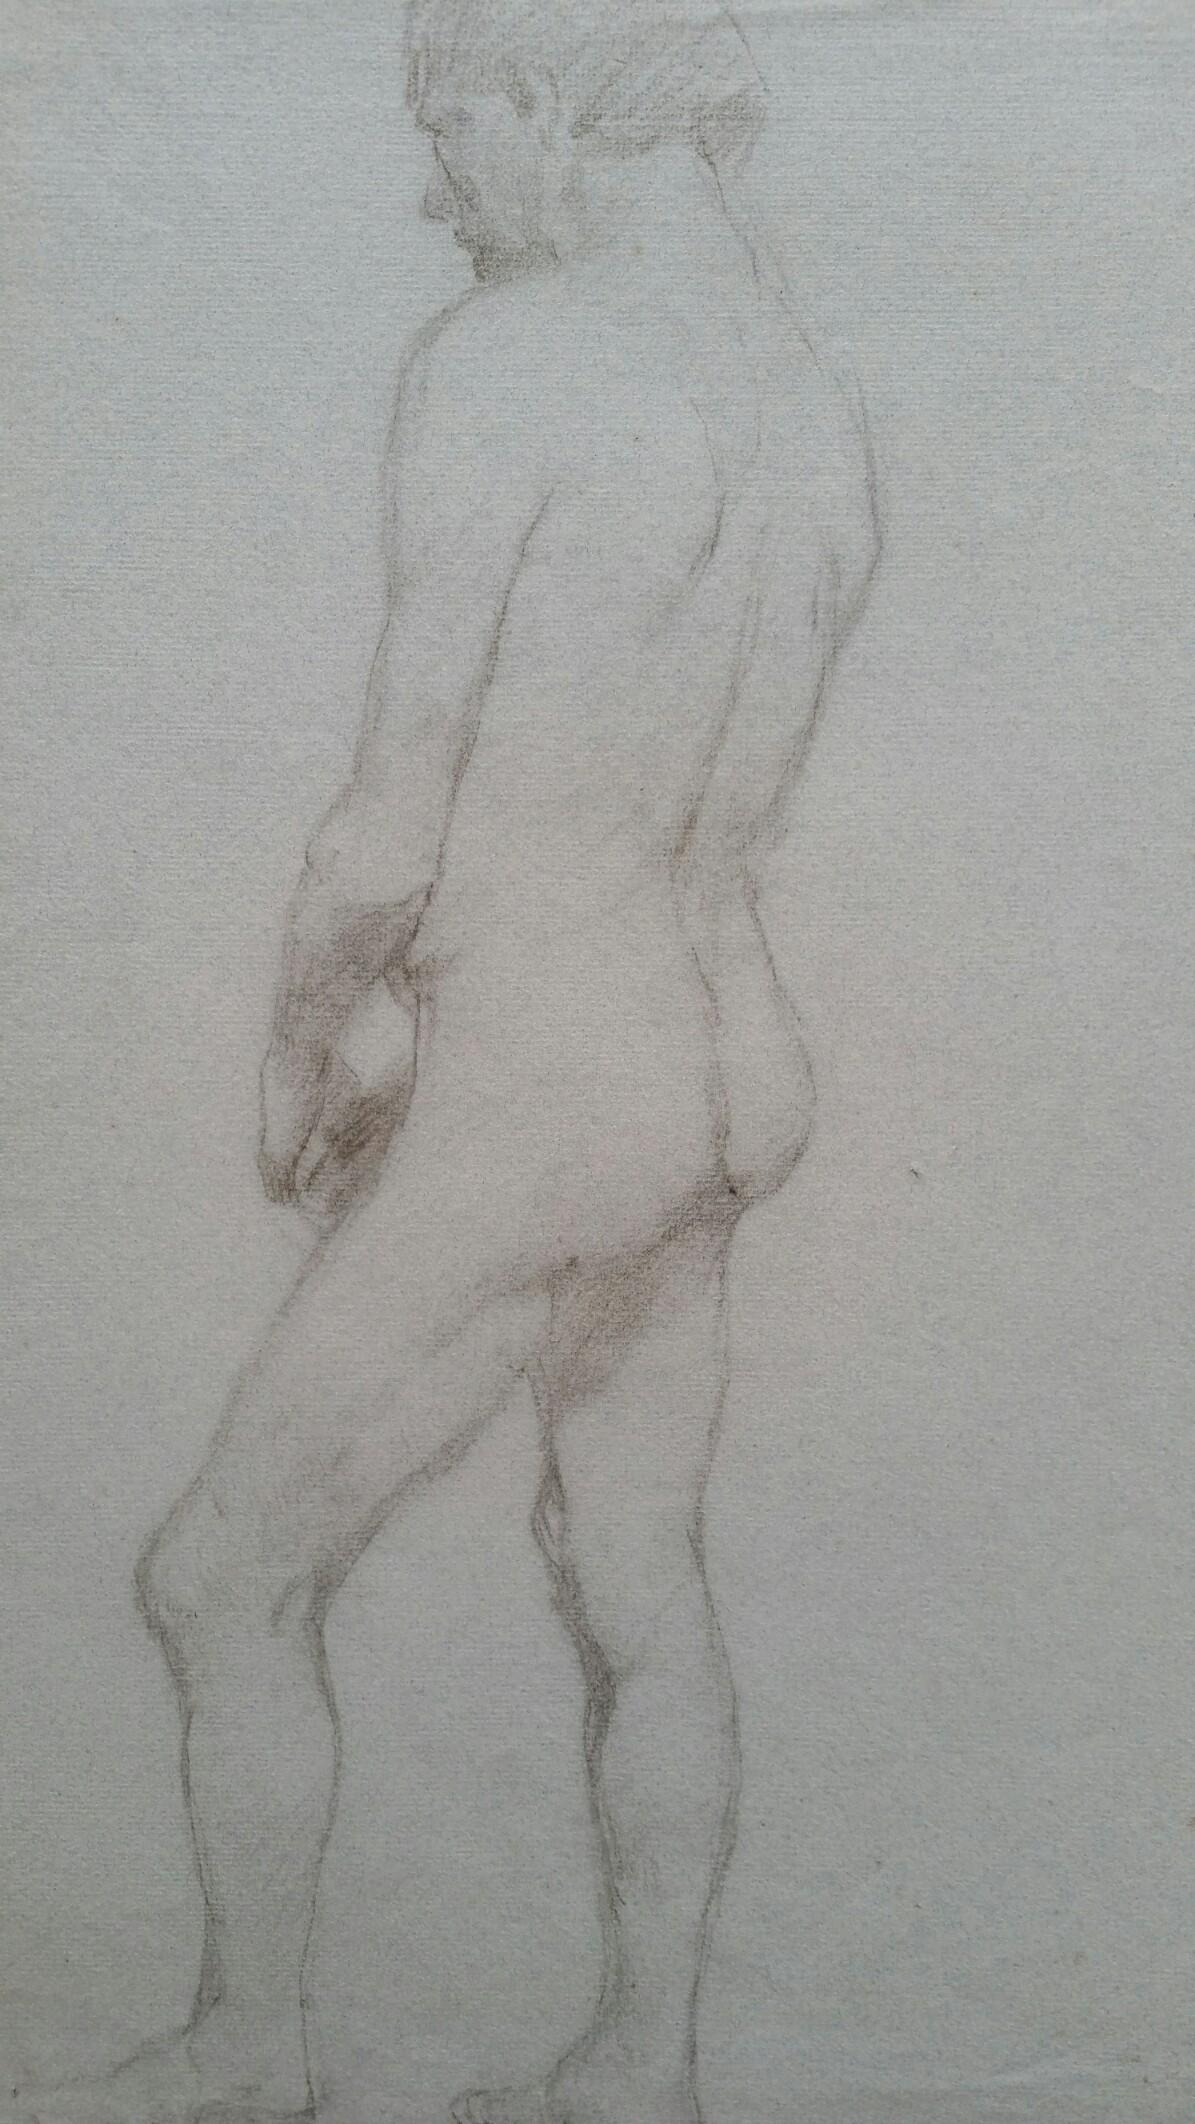 Croquis de portrait en graphite anglais d'un nu masculin, vue d'arrière